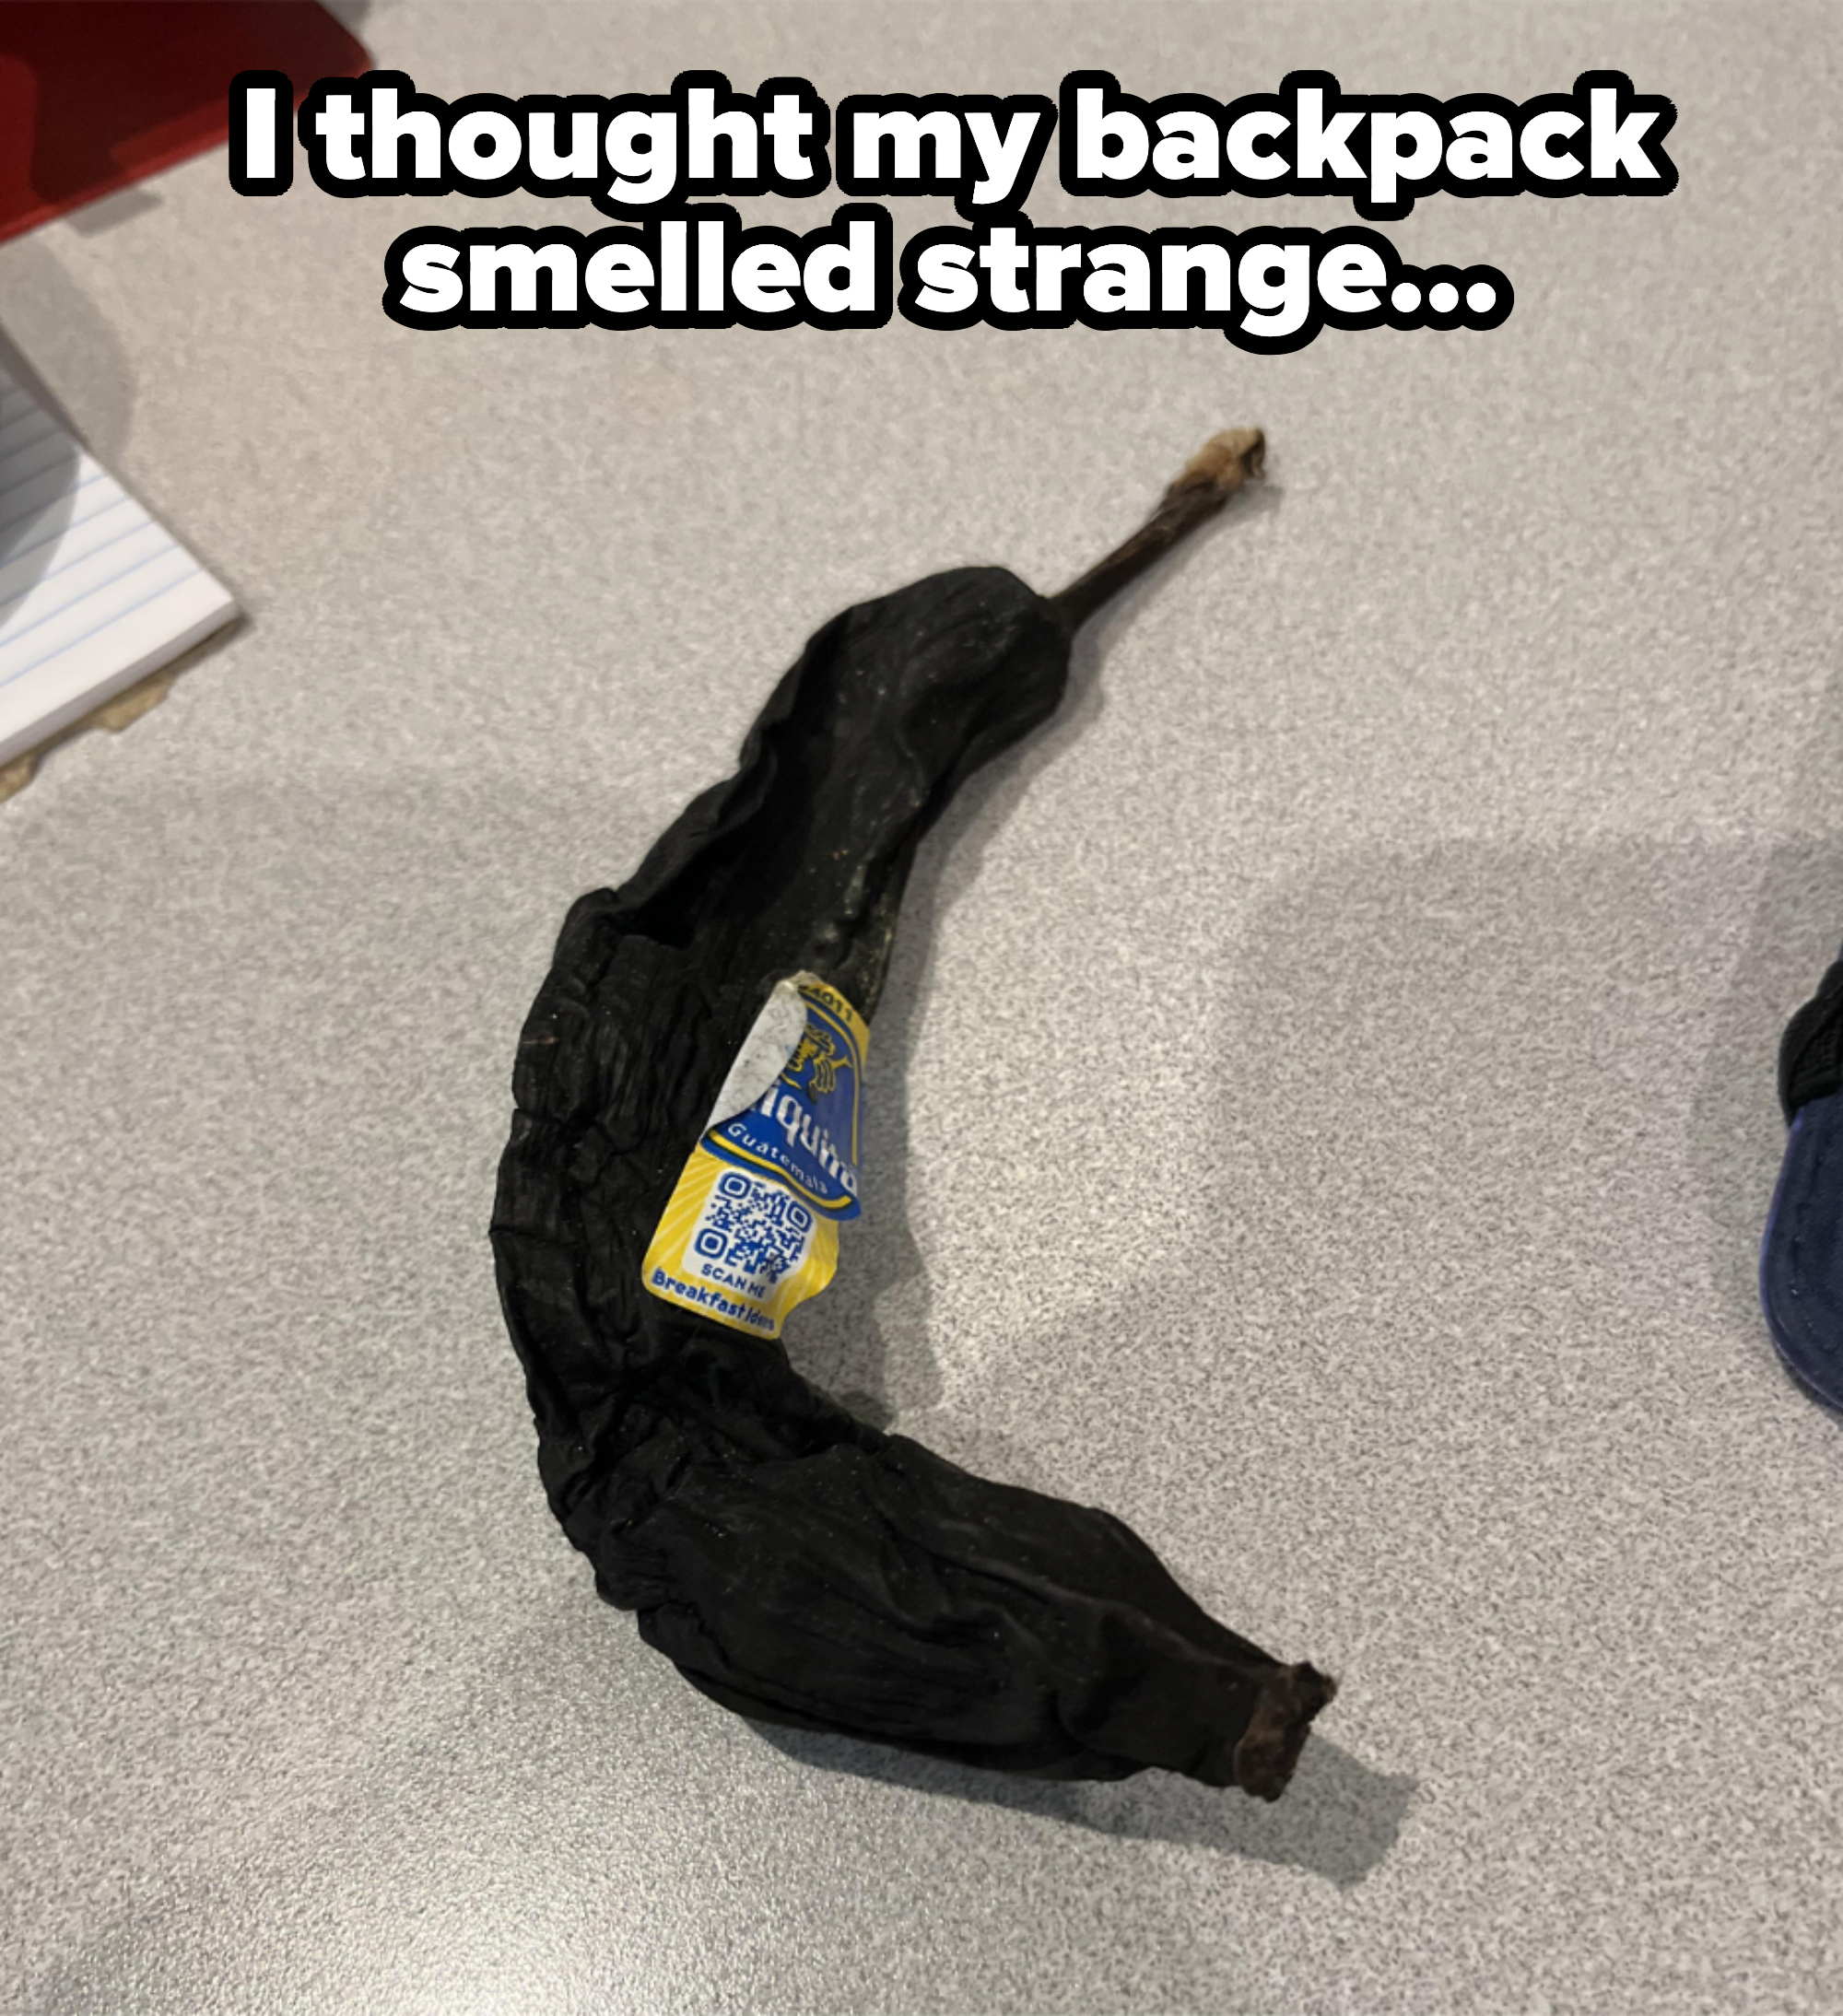 A black banana